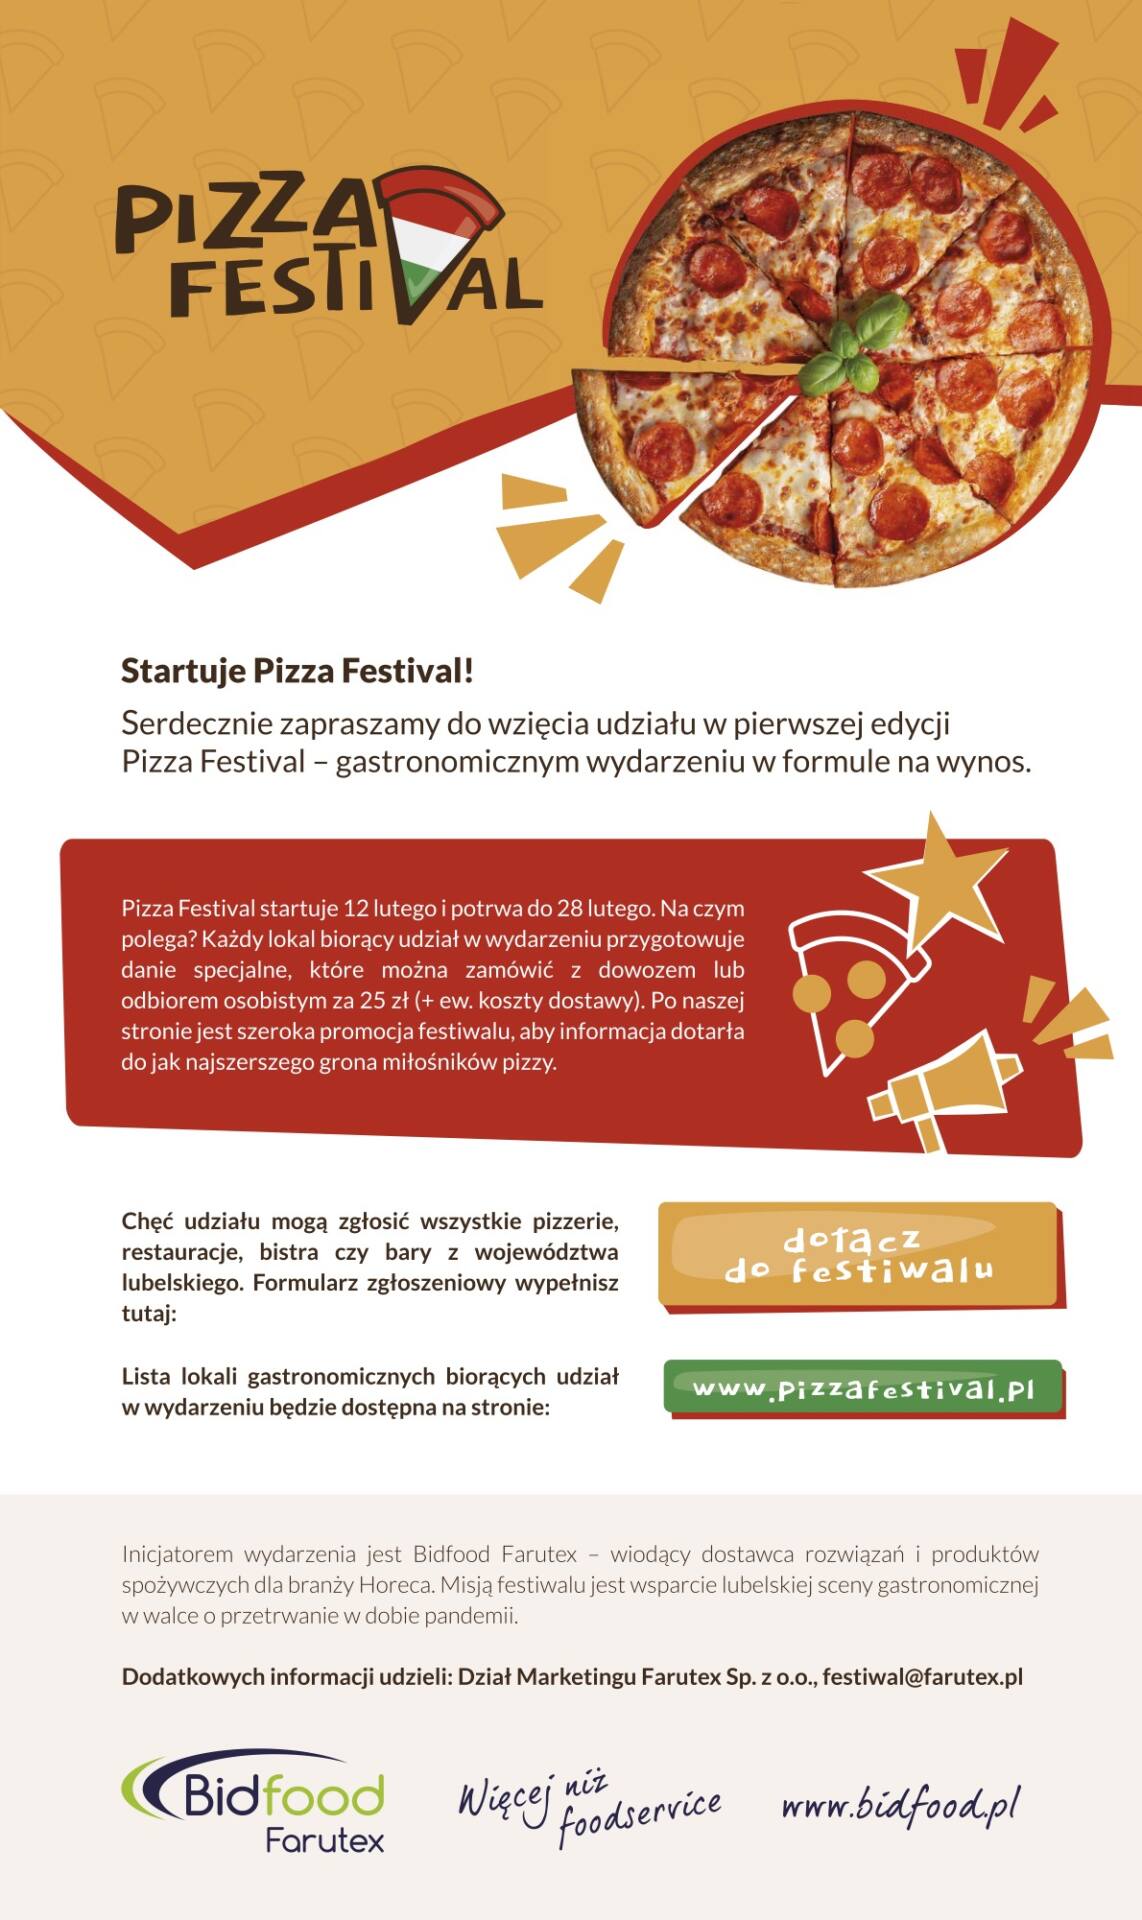 interaktywne zaproszenie do udzialu w pizza festival lublin informacja Rusza Pizza Festival - Restauratorze, zgłoś swój udział!